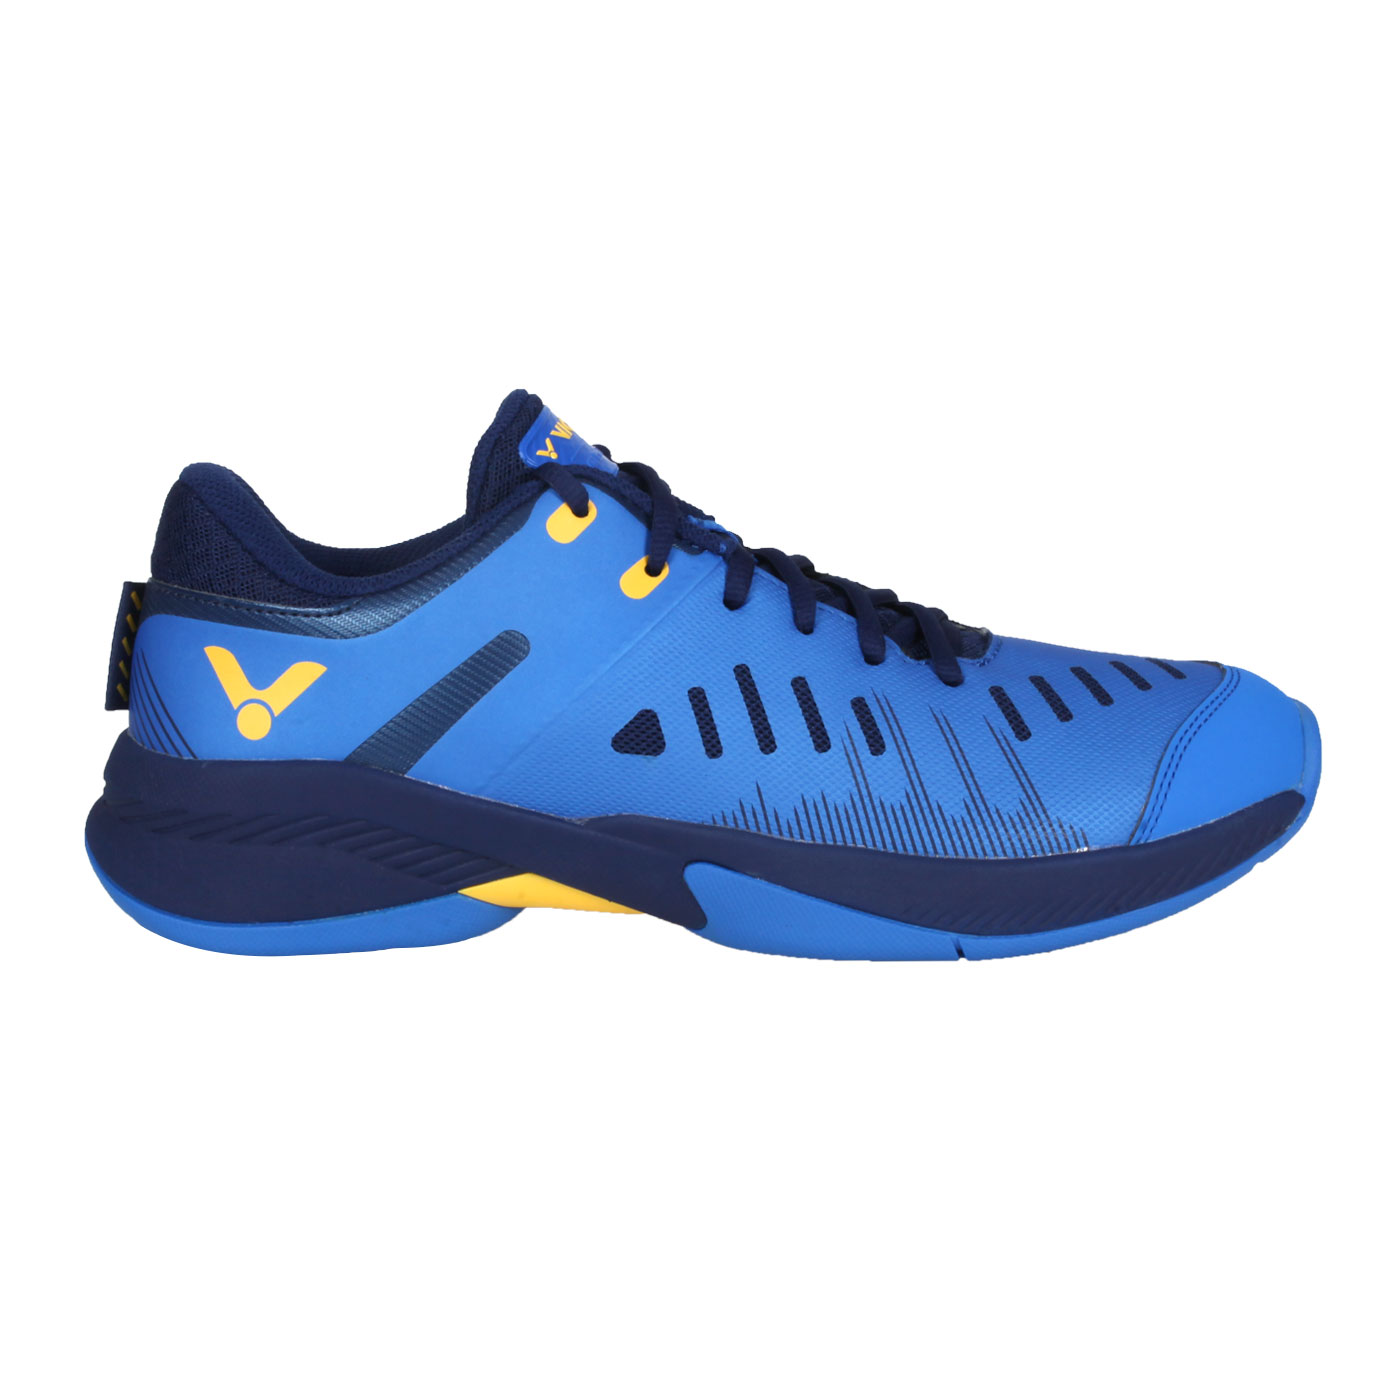 VICTOR 男款專業羽球鞋 A670-F - 藍丈青黃